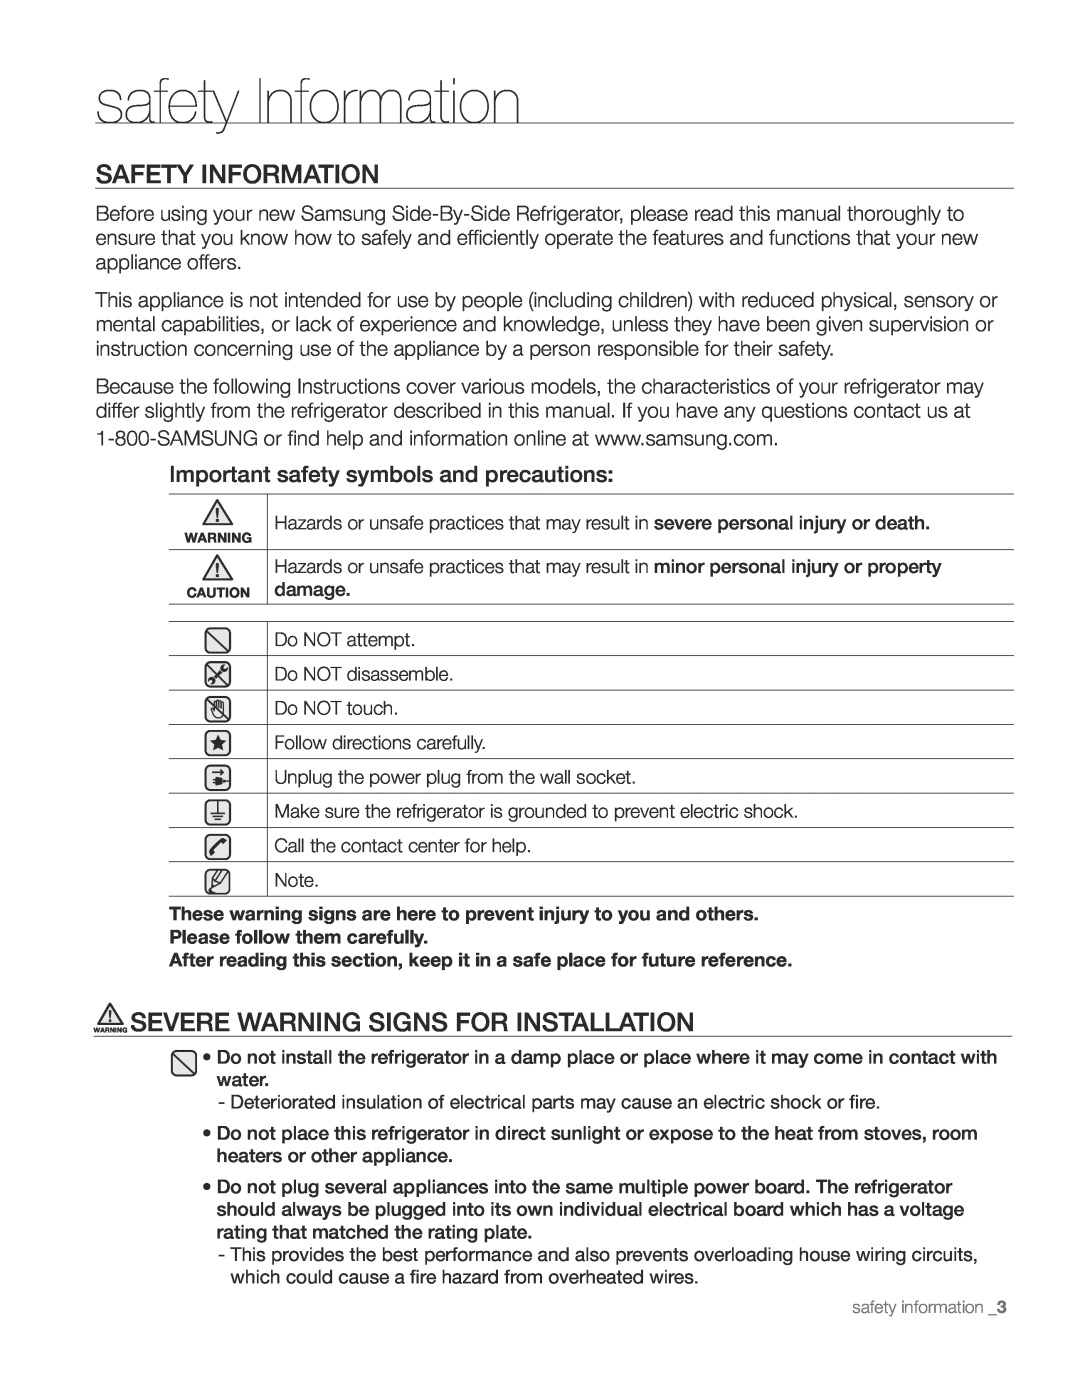 Samsung RS267TDBP user manual safety Information, Safety Information, Warning Severe Warning Signs For Installation 